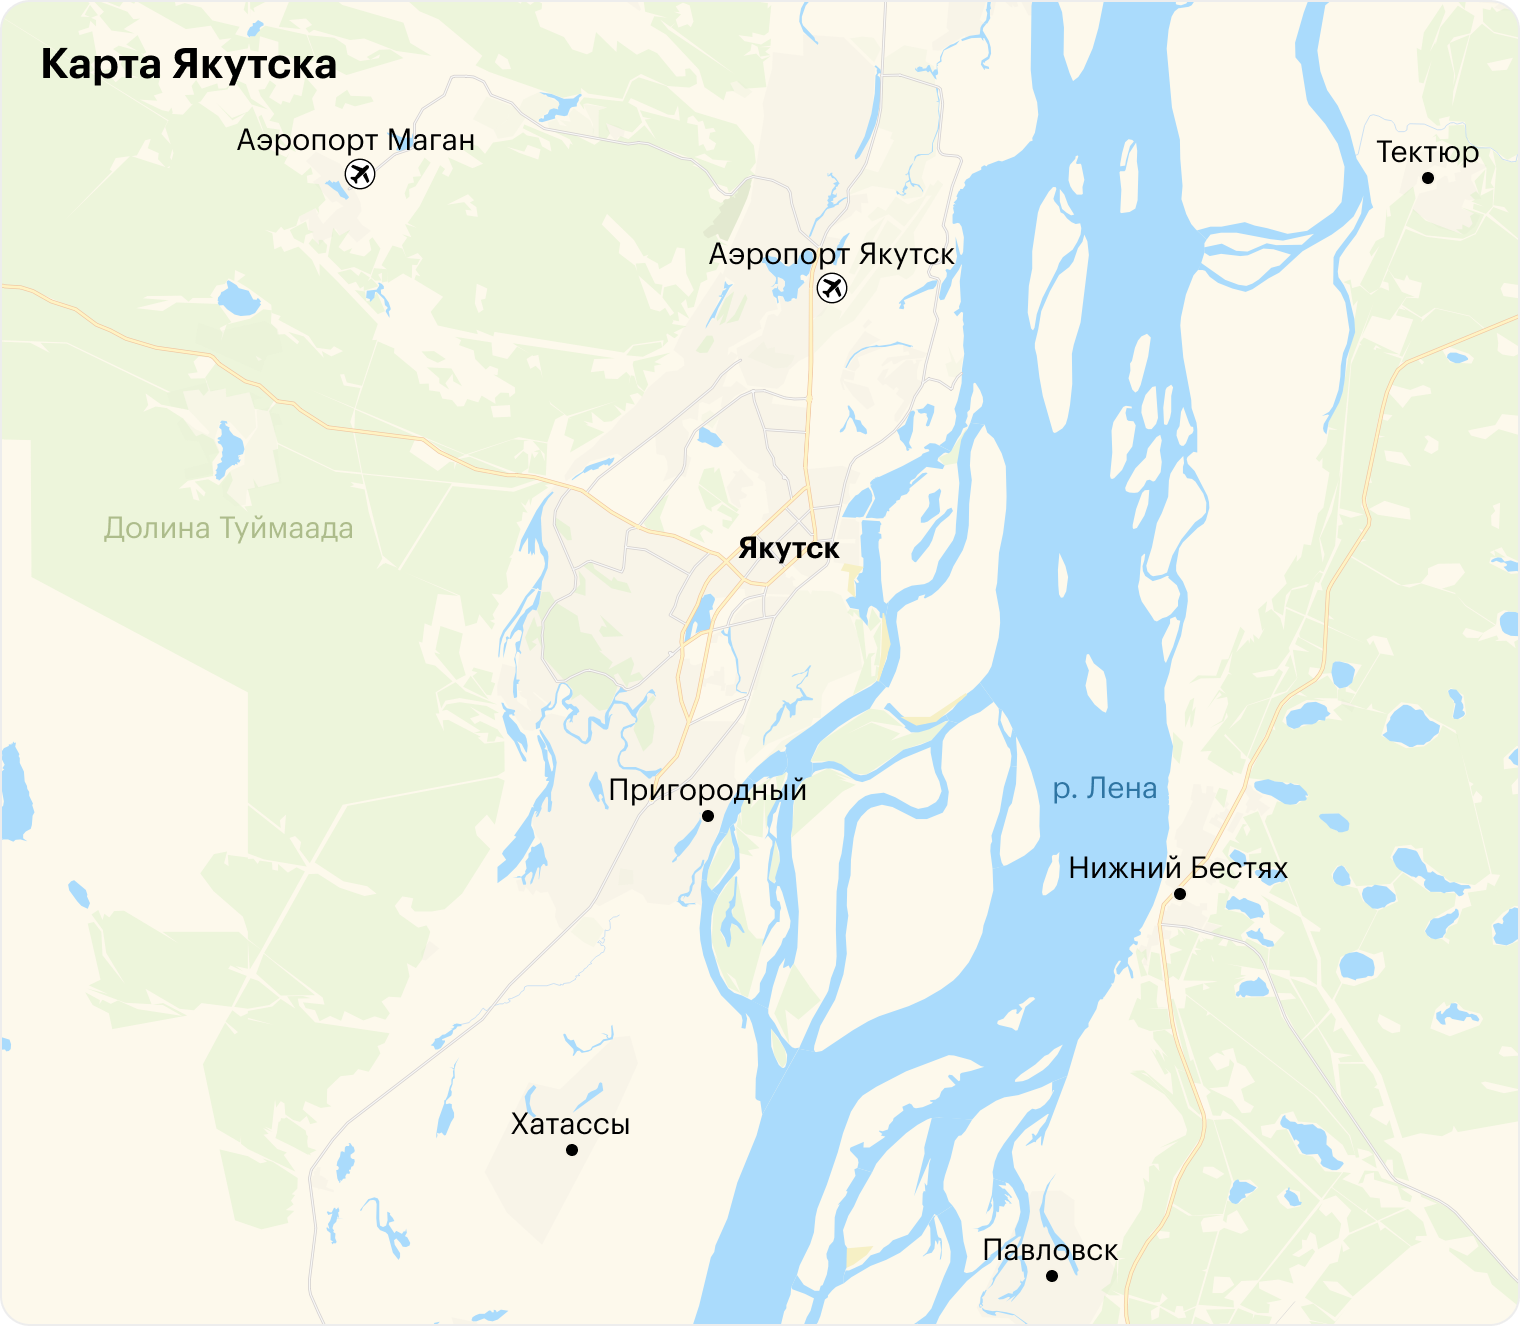 Якутск с одной стороны ограничен рекой, а с другой — сопками долины Туймаада, поэтому он вытянут и растет в длину